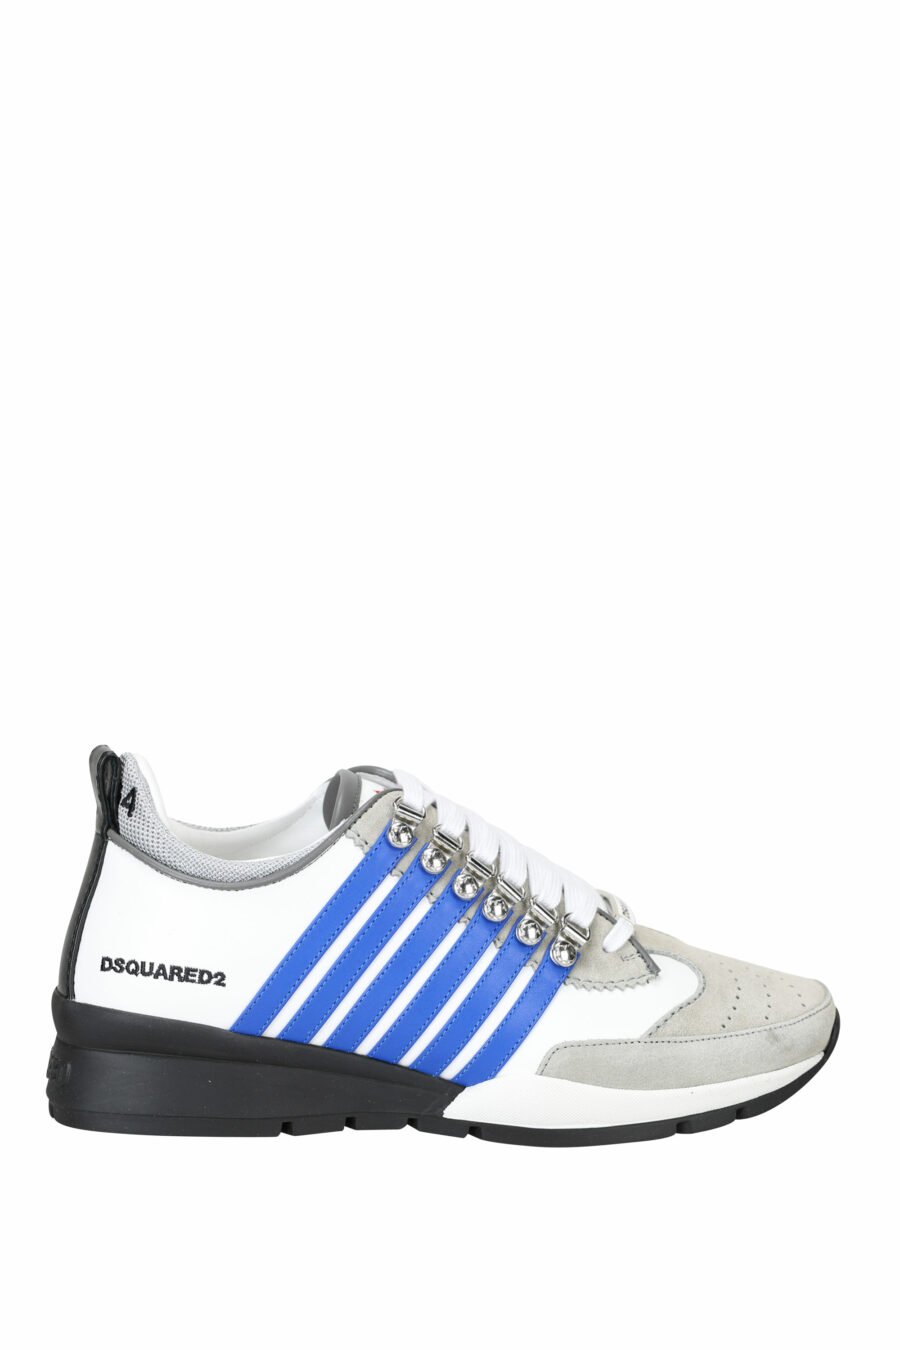 Zapatillas blancas con mix en gris, líneas azules y detalles en negro - 8055777244326 1